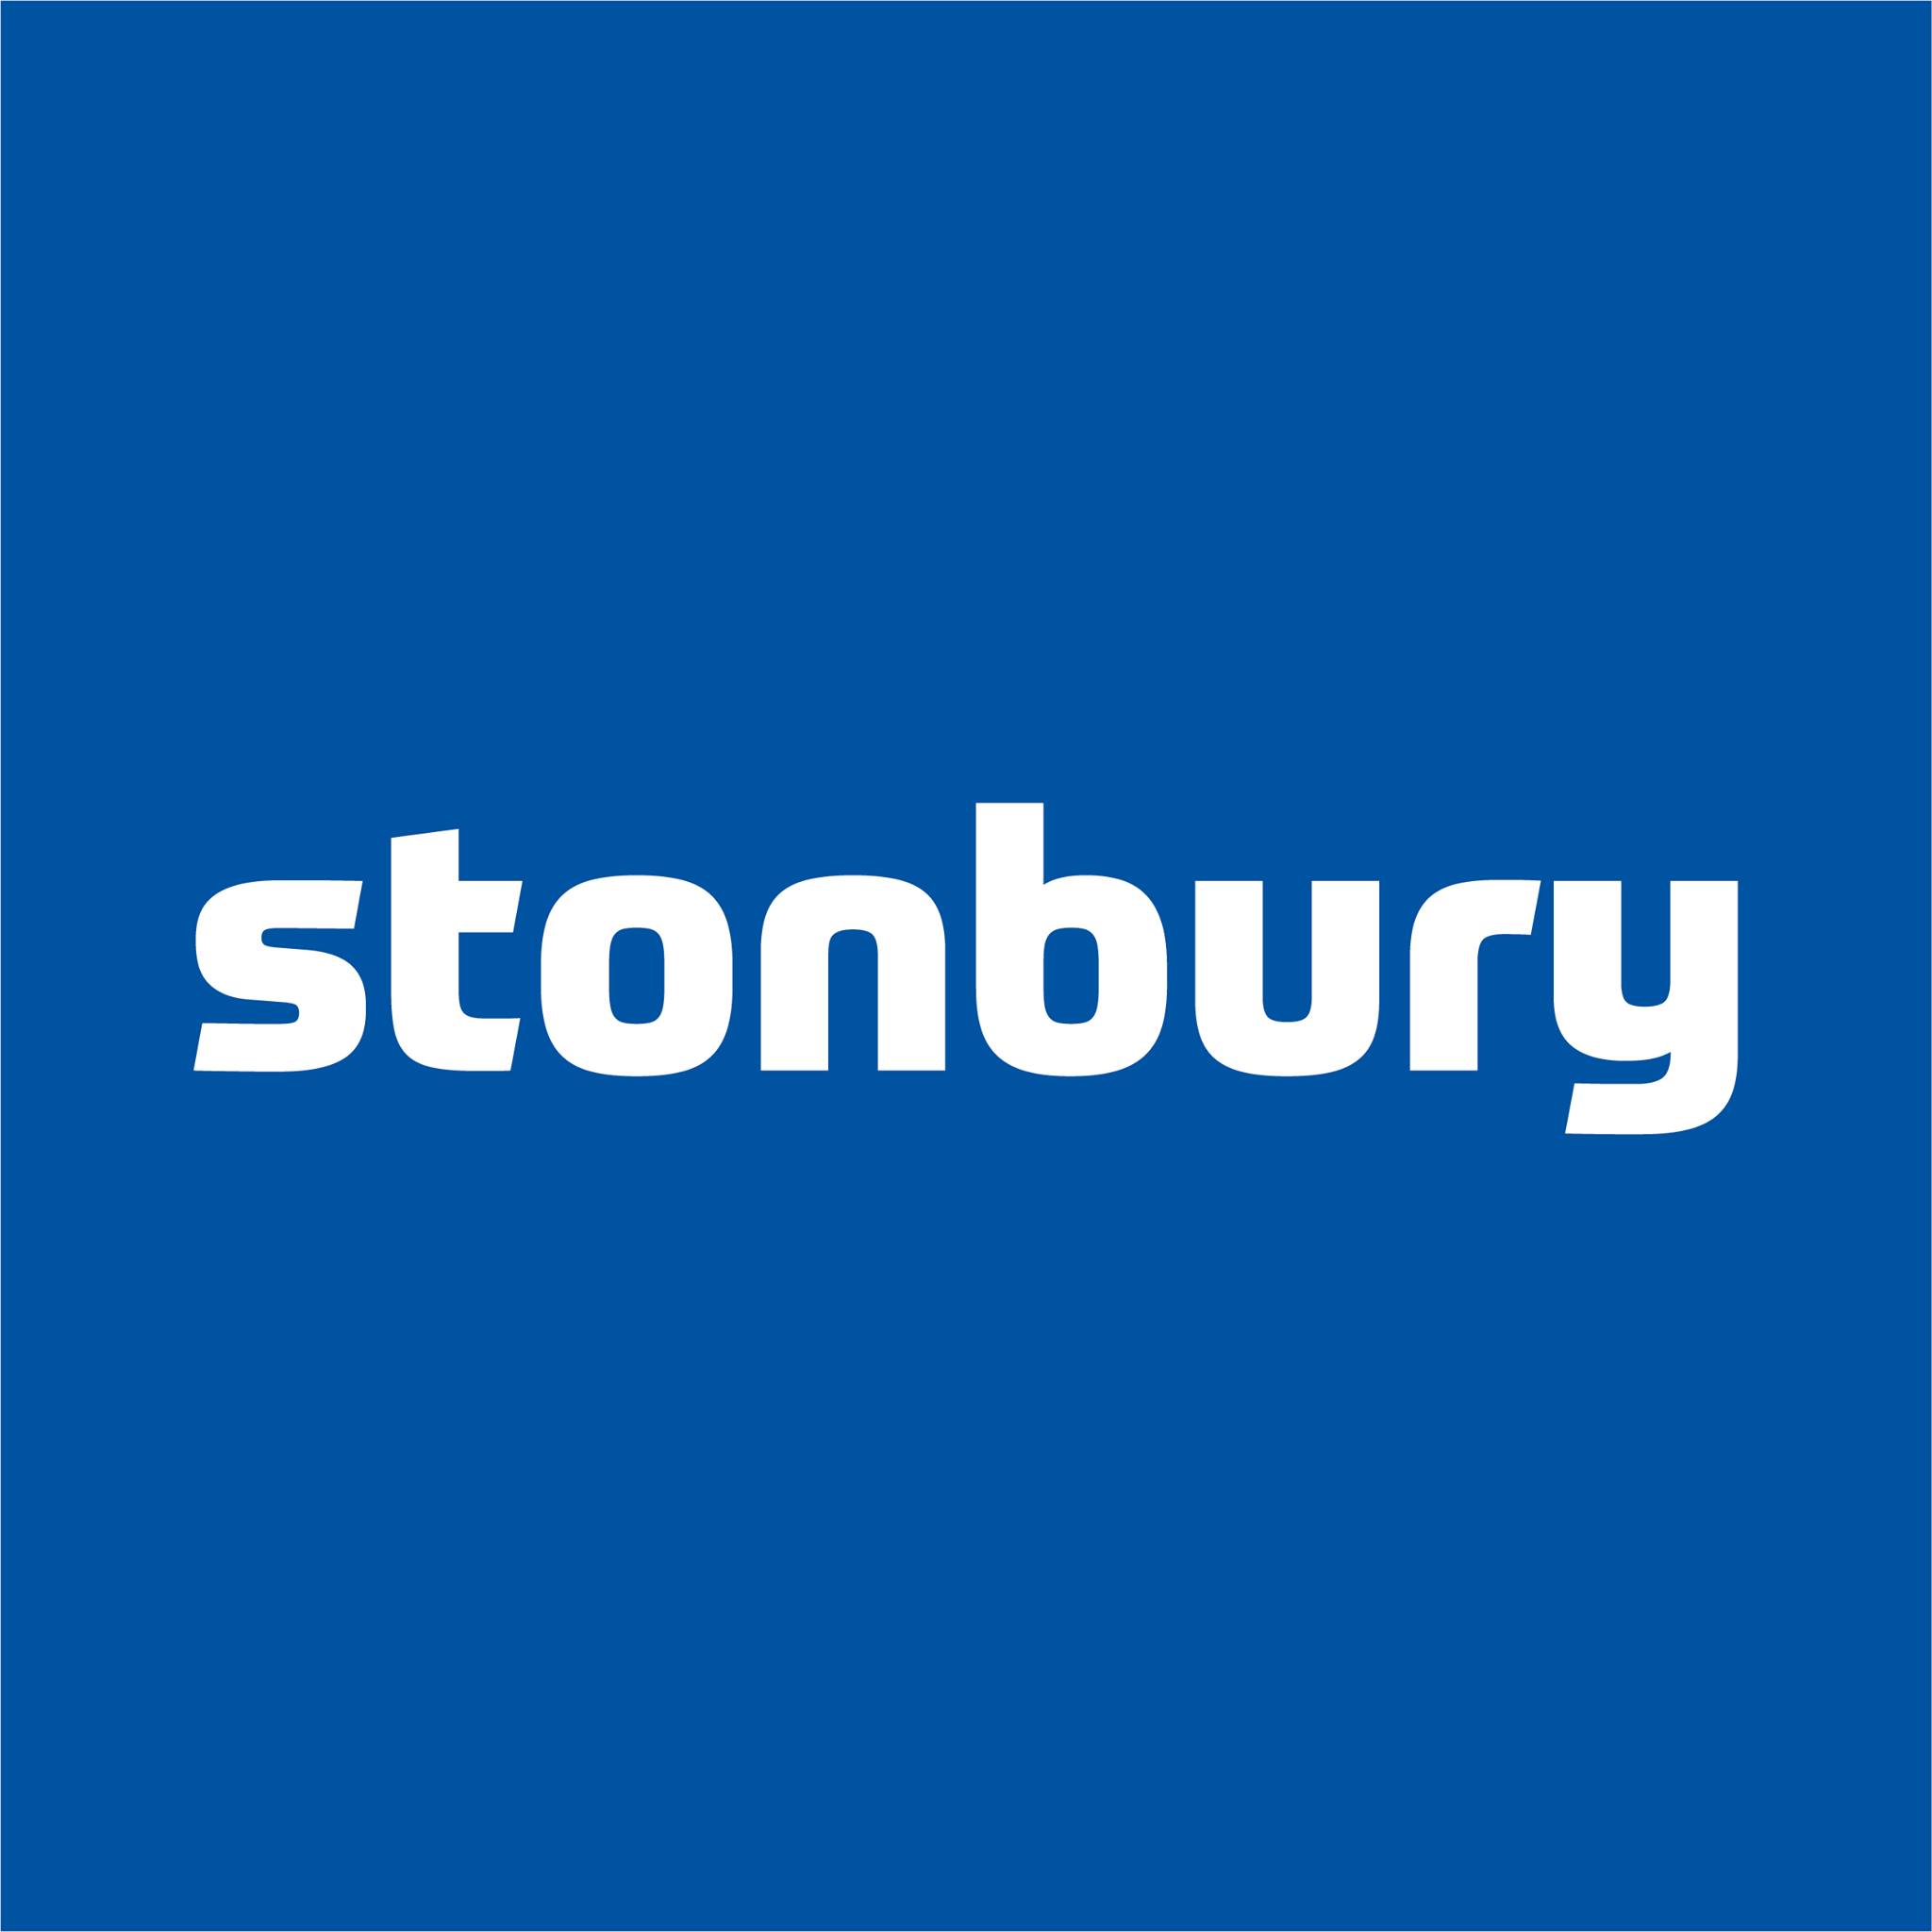 Stonbury - Premises Fire risk Assessment